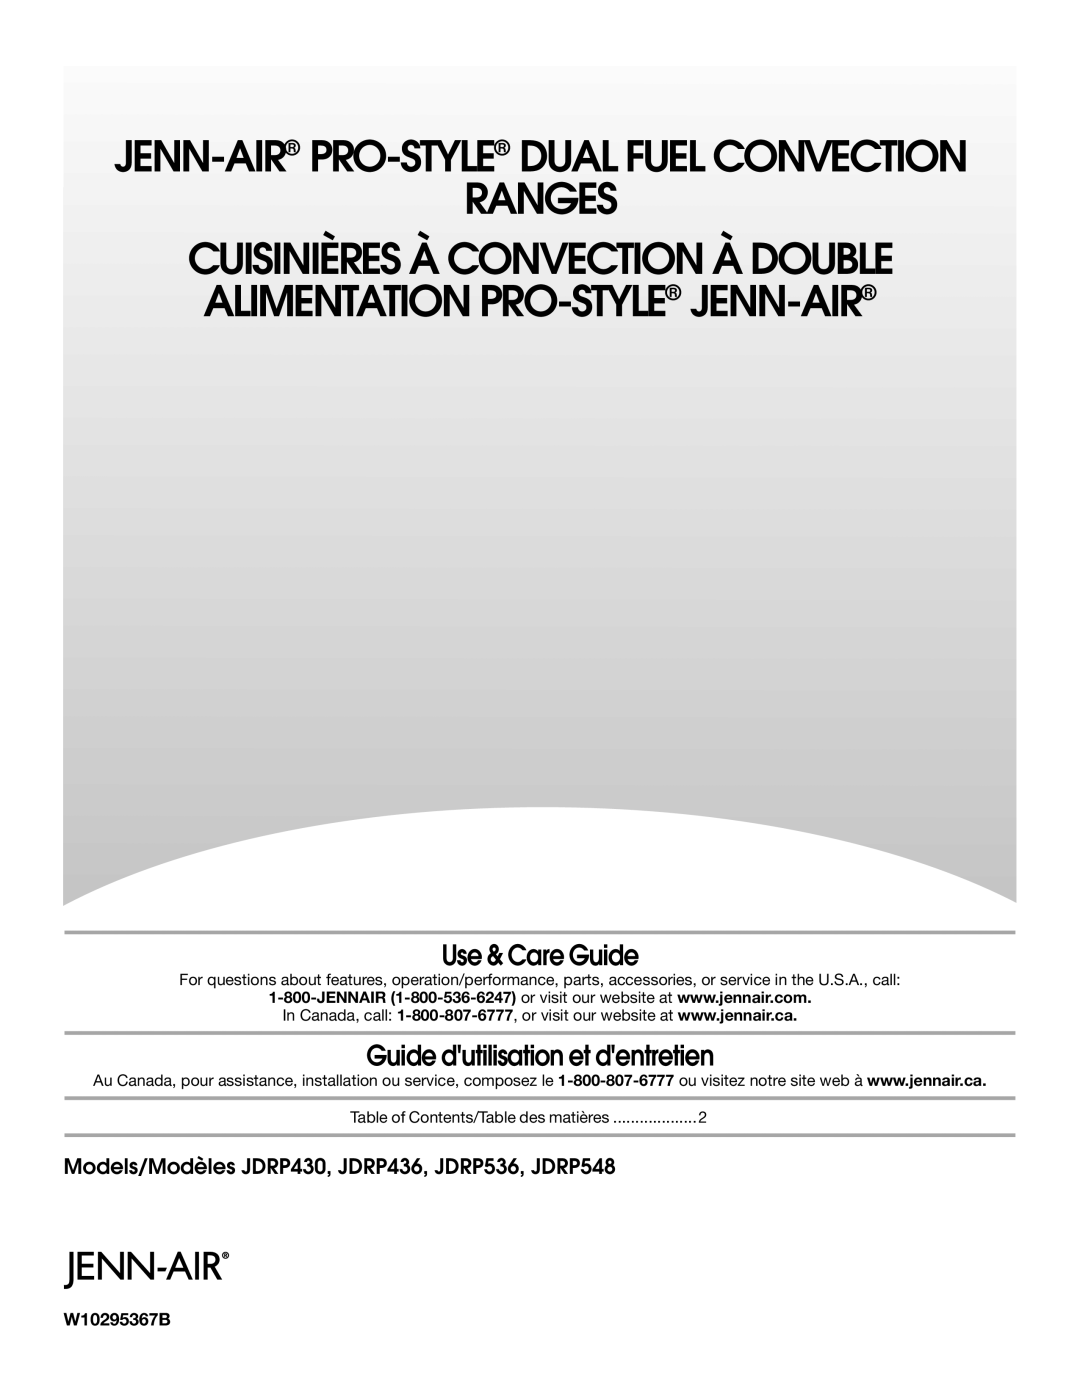 Jenn-Air JDRP430 manual Cuisinières À Convection À Double Alimentation Pro-Style Jenn-Air, Use & Care Guide, Ranges 